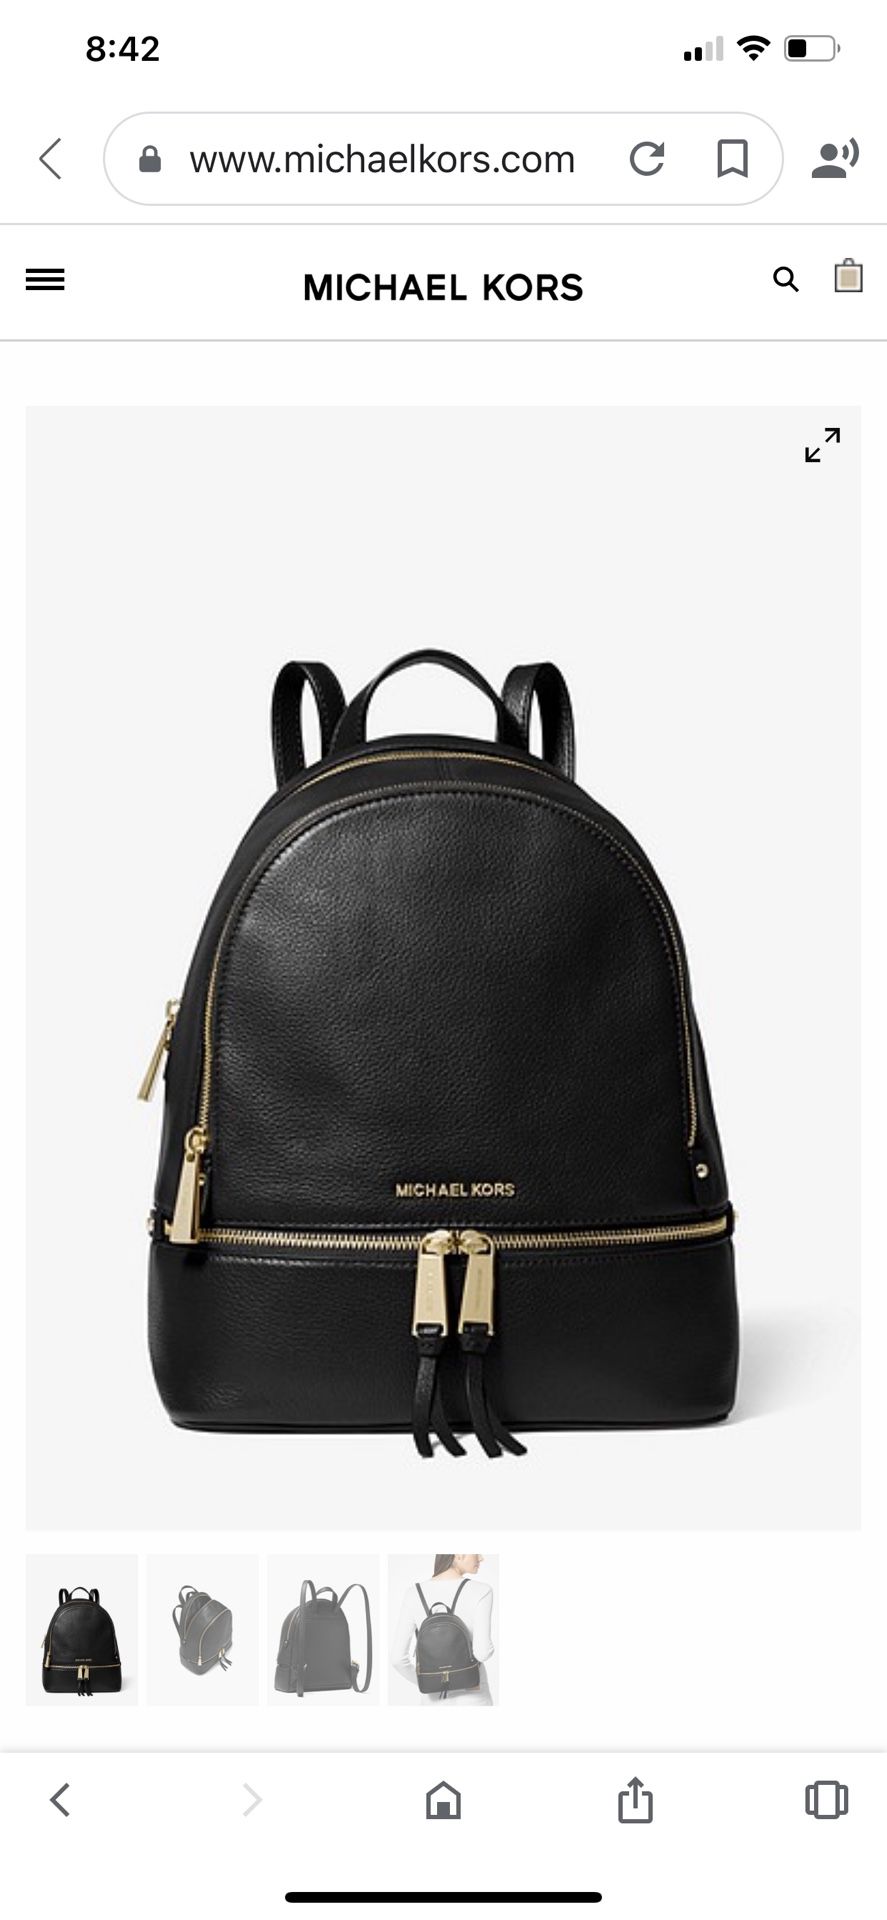 Michael Kors MICHAEL KORS backpack purse